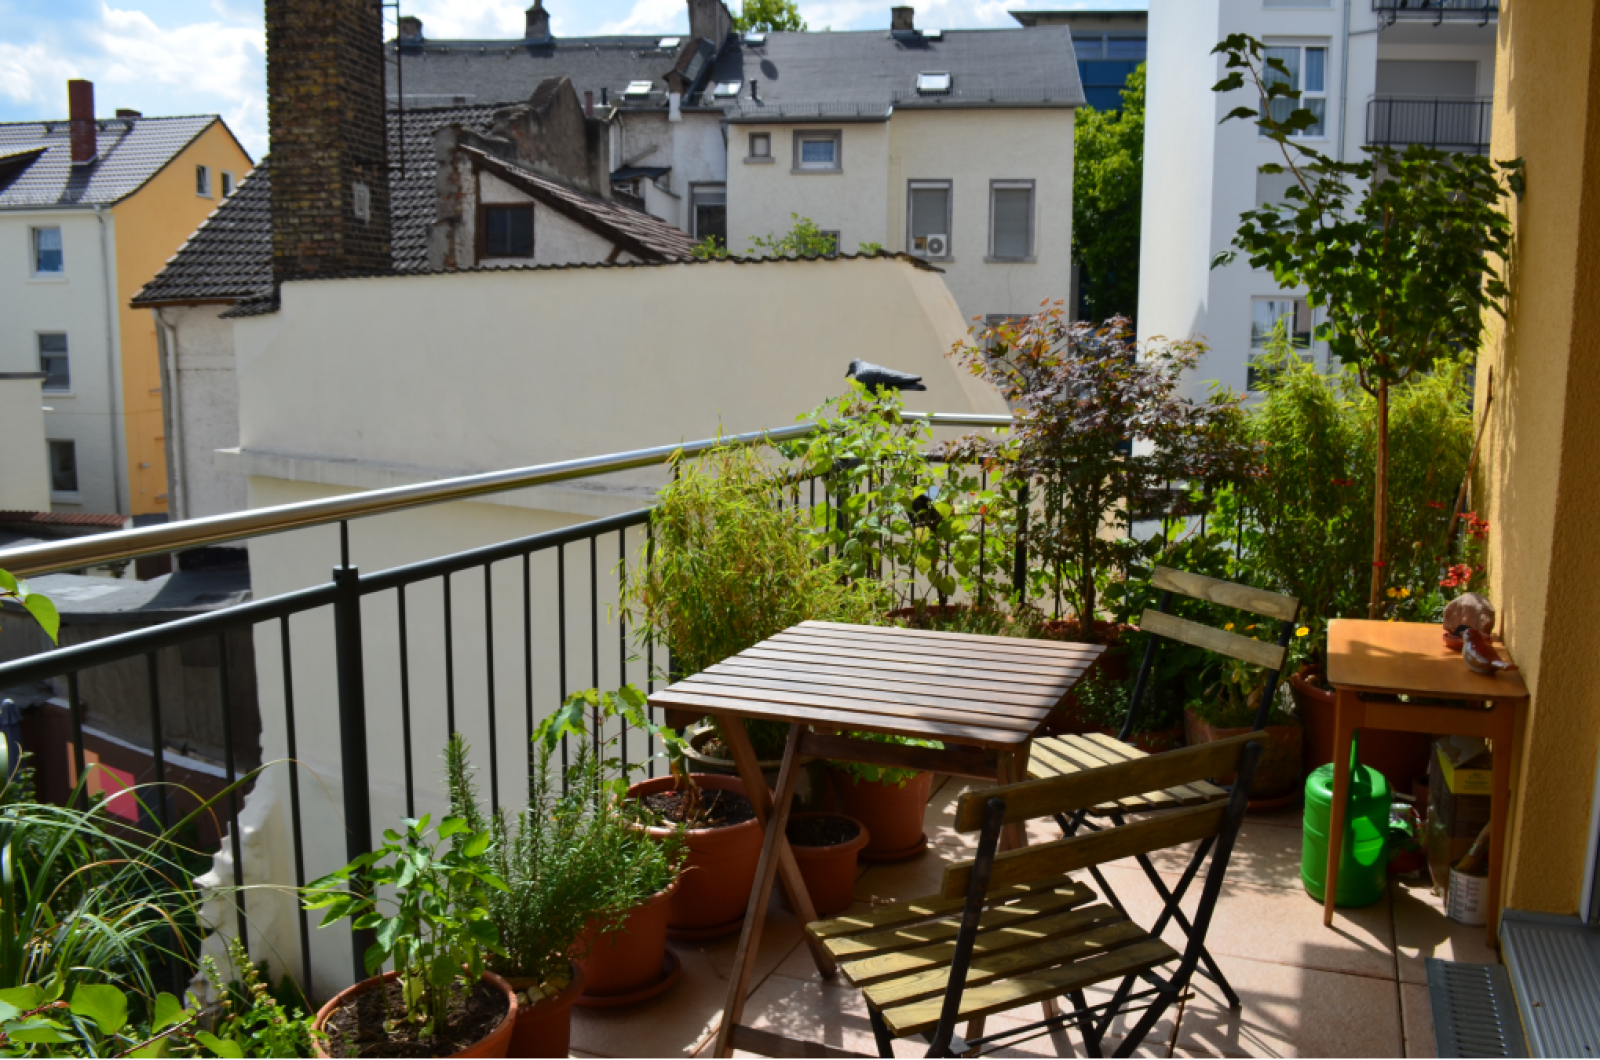 Las terrazas y los jardines, los espacios más demandados a la hora de buscar vivienda tras el coronavirus